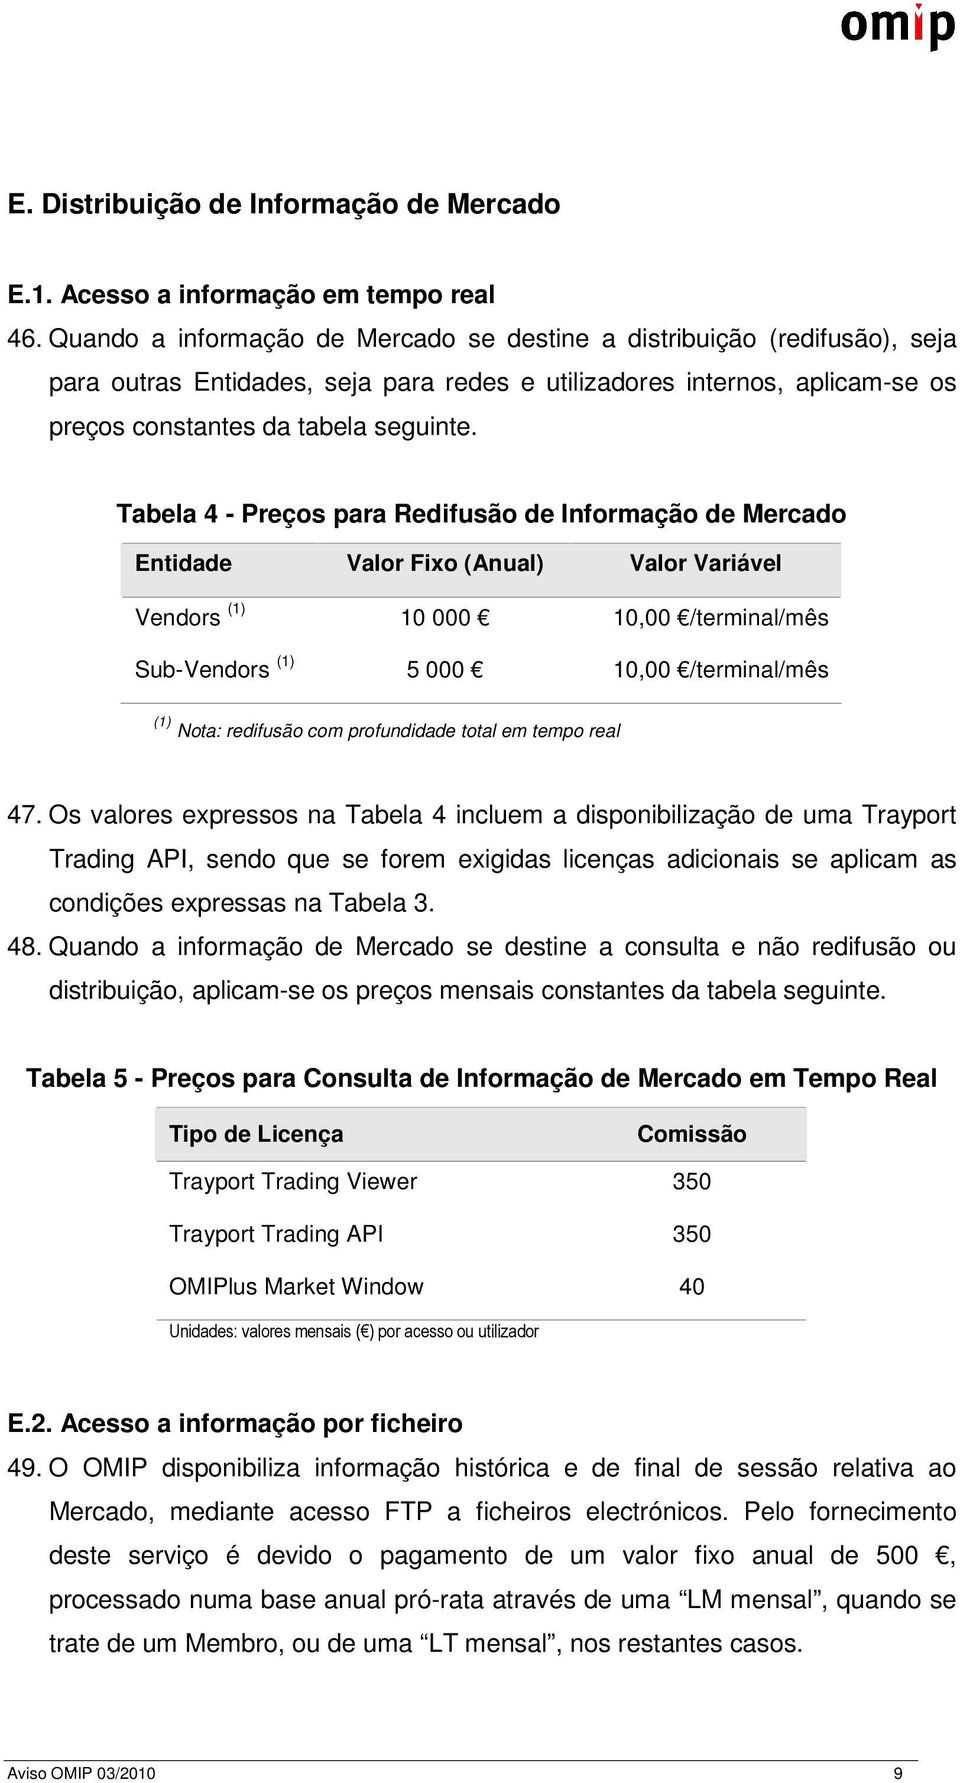 Tabela 4 - Preços para Redifusão de Informação de Mercado Entidade Valor Fixo (Anual) Valor Variável Vendors (1) 10 000 10,00 /terminal/mês Sub-Vendors (1) 5 000 10,00 /terminal/mês (1) Nota: